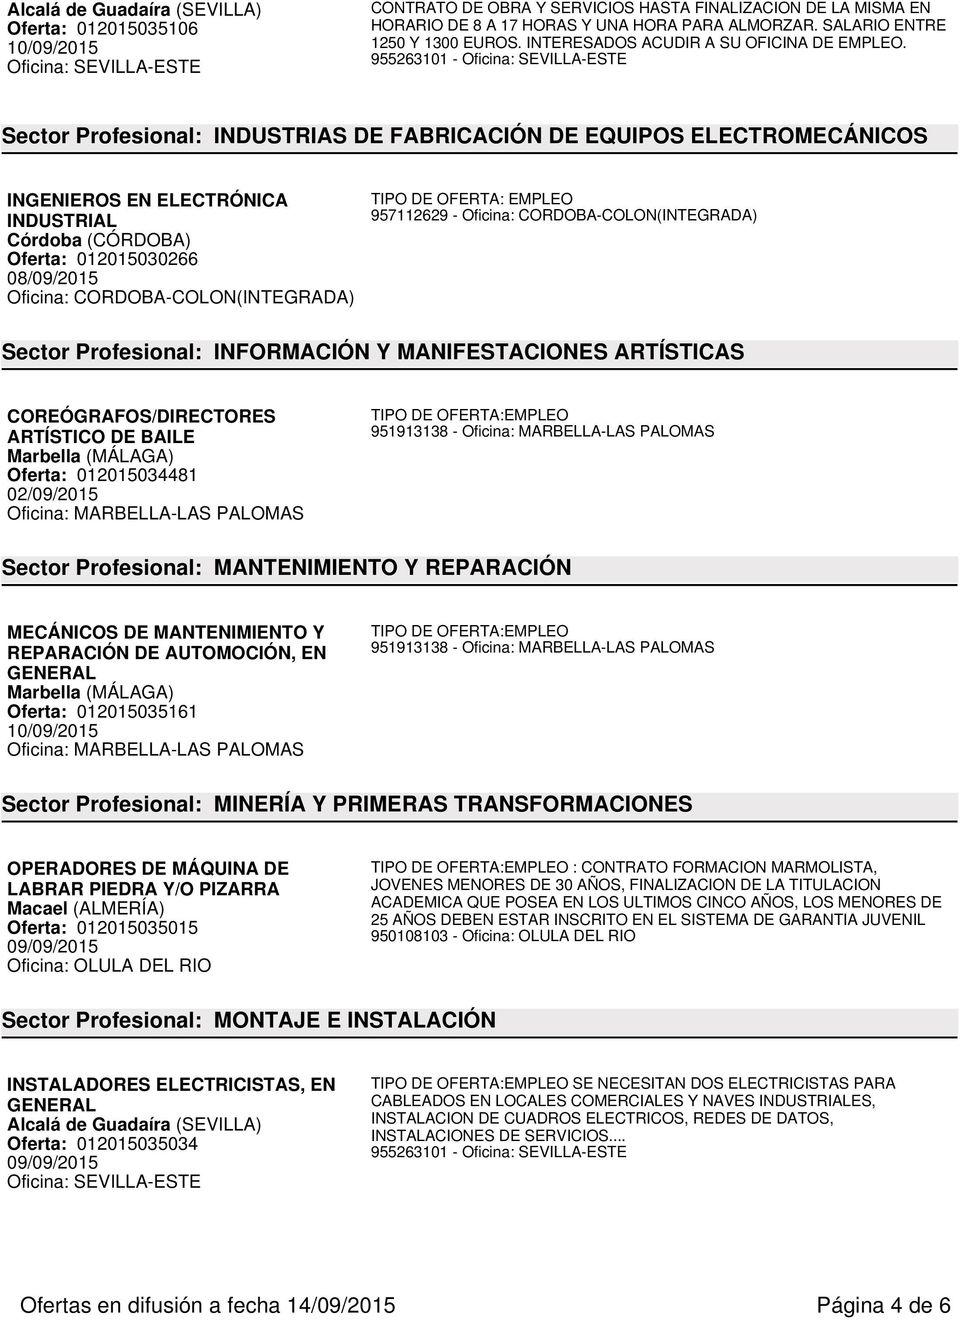 955263101 - Oficina: SEVILLA-ESTE Sector Profesional: INDUSTRIAS DE FABRICACIÓN DE EQUIPOS ELECTROMECÁNICOS INGENIEROS EN ELECTRÓNICA INDUSTRIAL Córdoba (CÓRDOBA) Oferta: 012015030266 08/09/2015